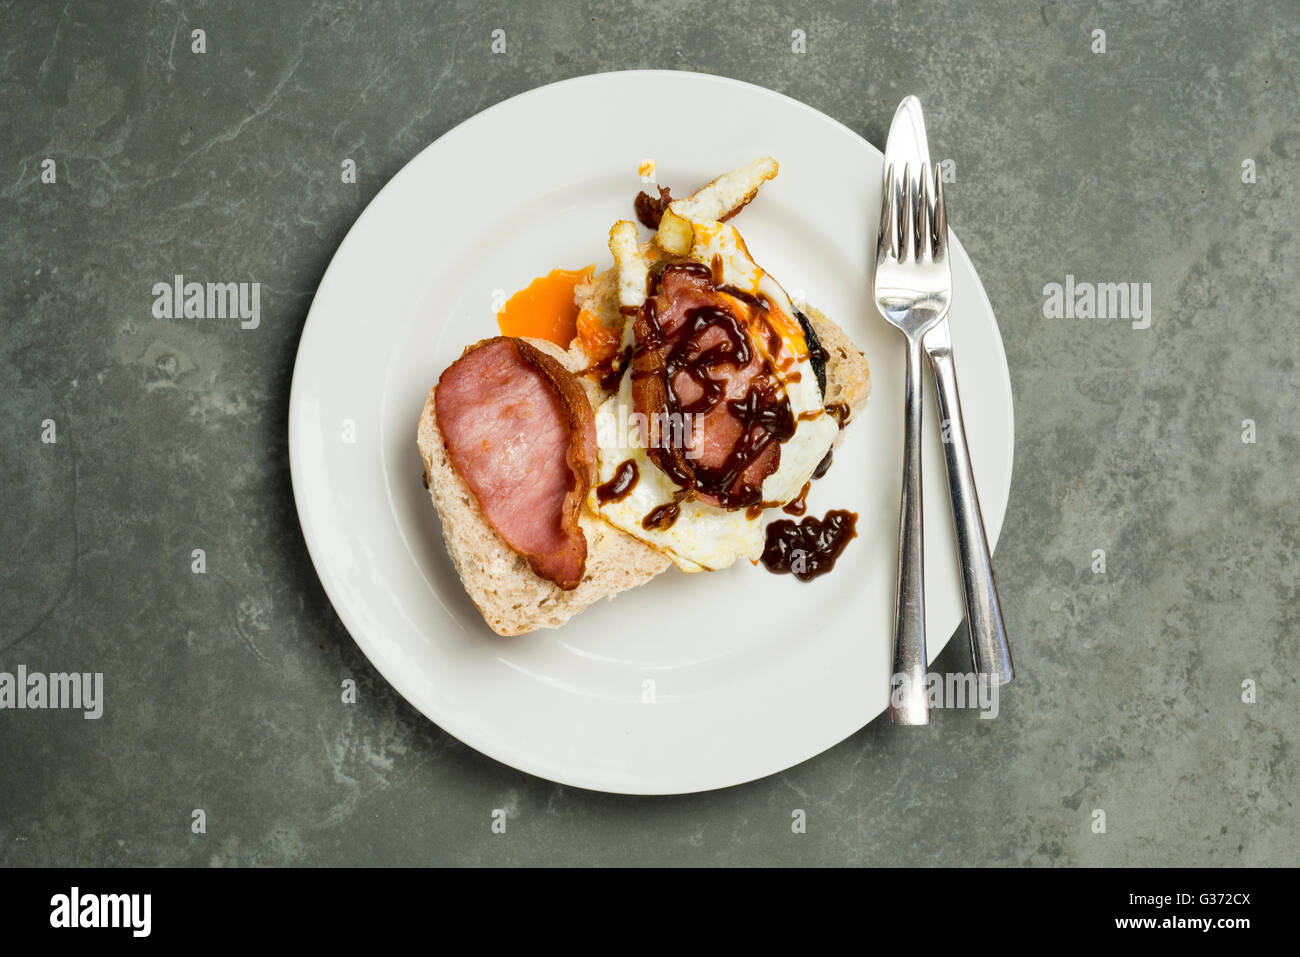 Aufwand für Speck und Ei auf Rolle mit Essgeschirr auf Teller gelegt auf eine Steinoberfläche Stockfoto